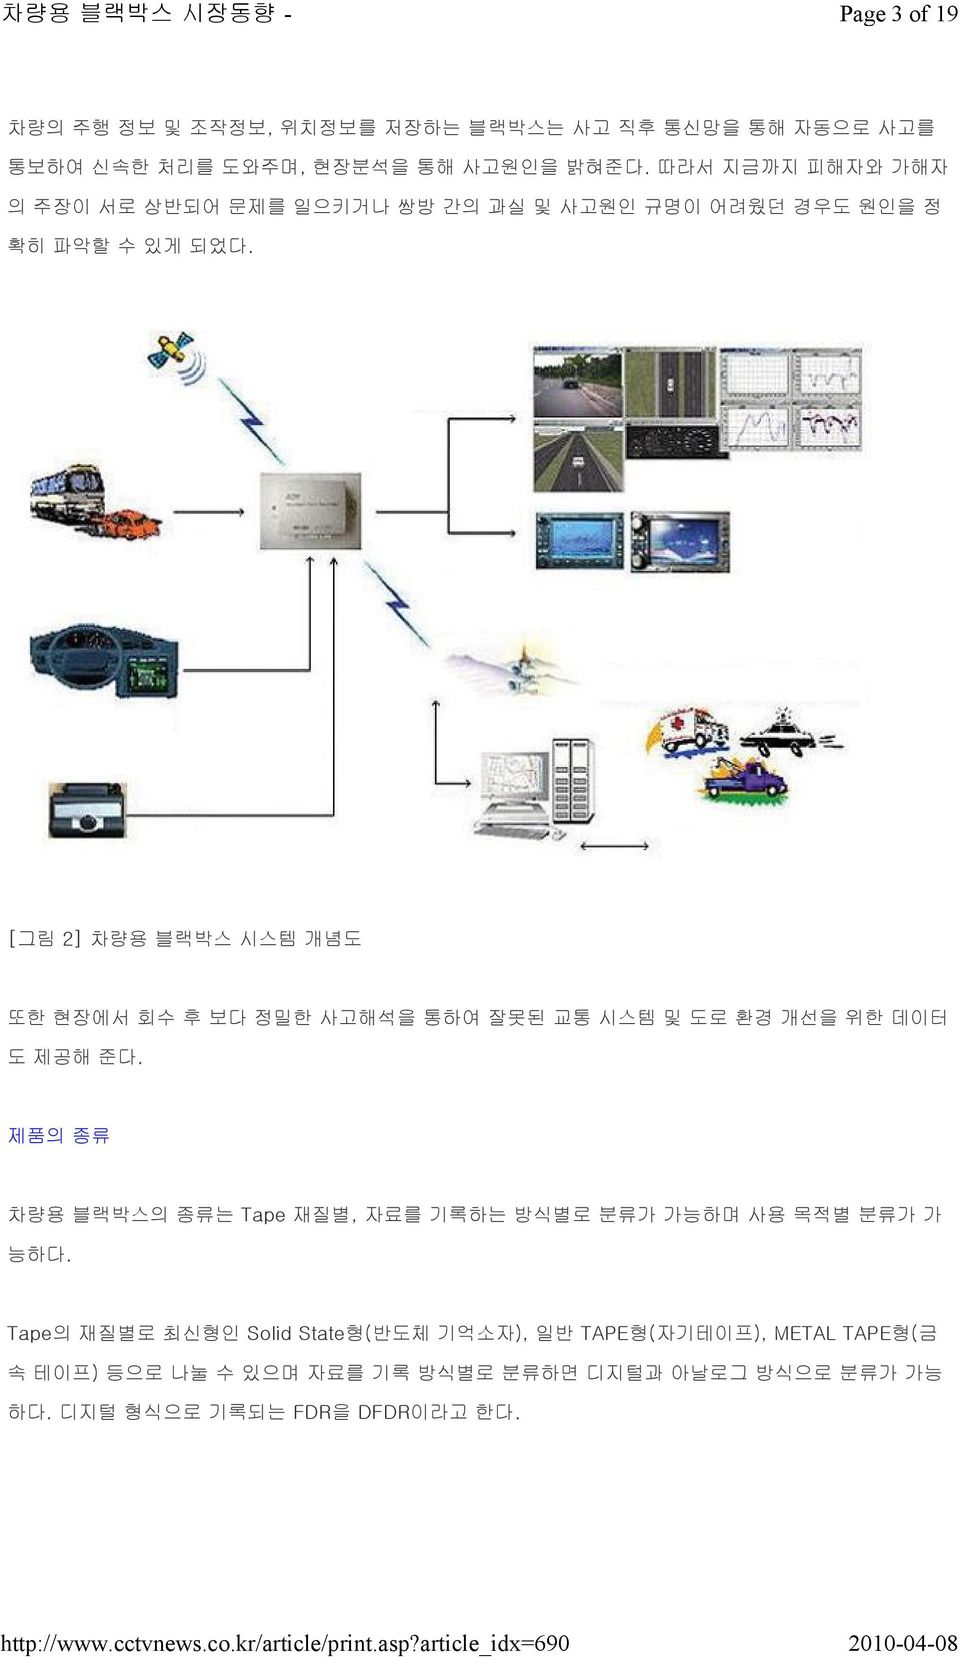 [그림 2] 차량용 블랙박스 시스템 개념도 또한 현장에서 회수 후 보다 정밀한 사고해석을 통하여 잘못된 교통 시스템 및 도로 환경 개선을 위한 데이터 도 제공해 준다.